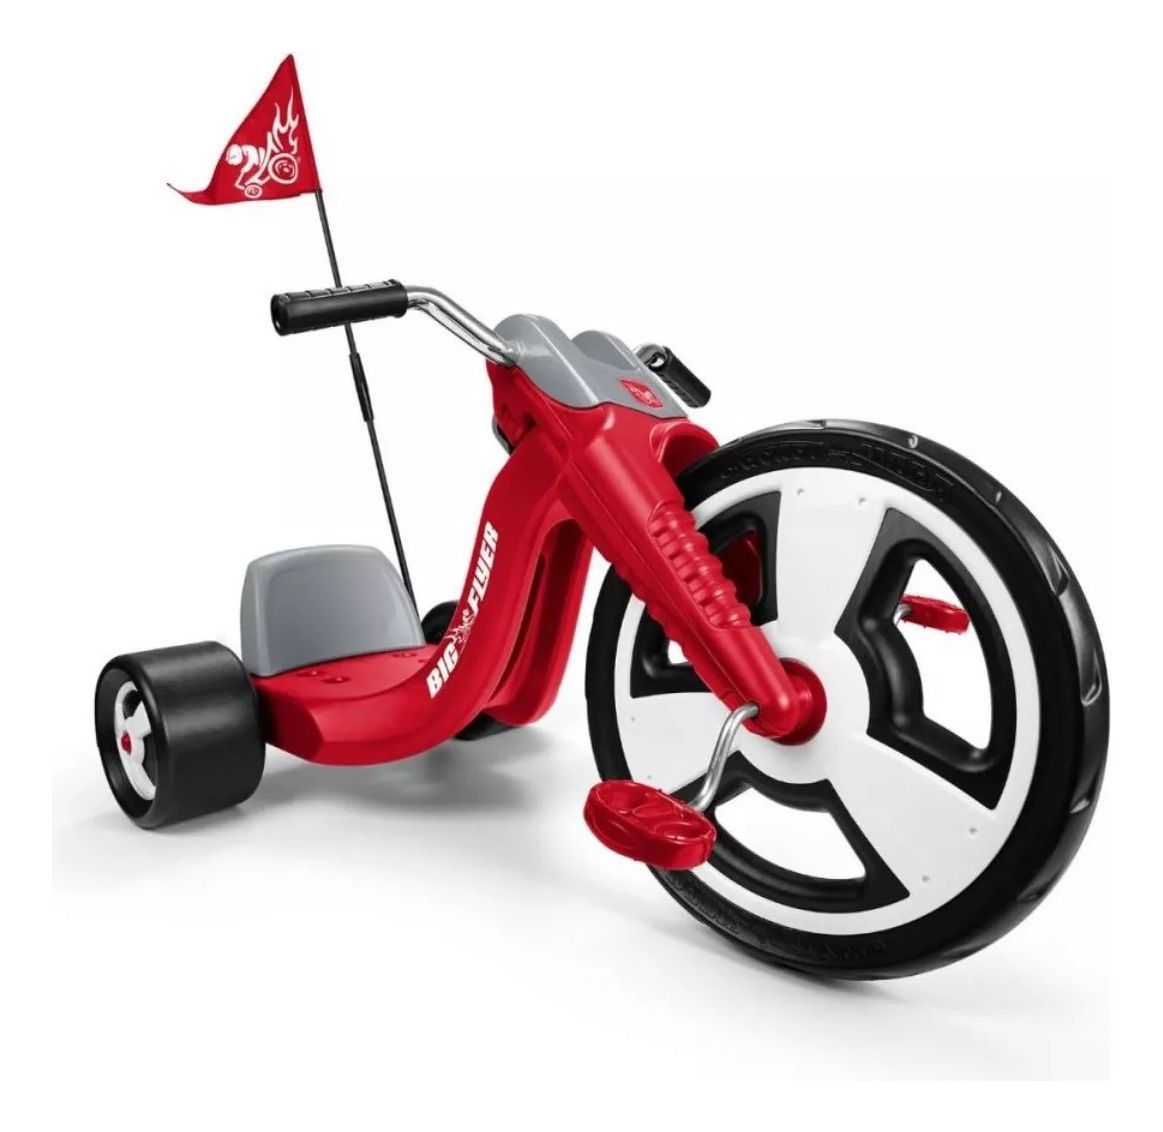 Triciclo/ Motoca/ Moto MT Speed - Vermelha - Disktem